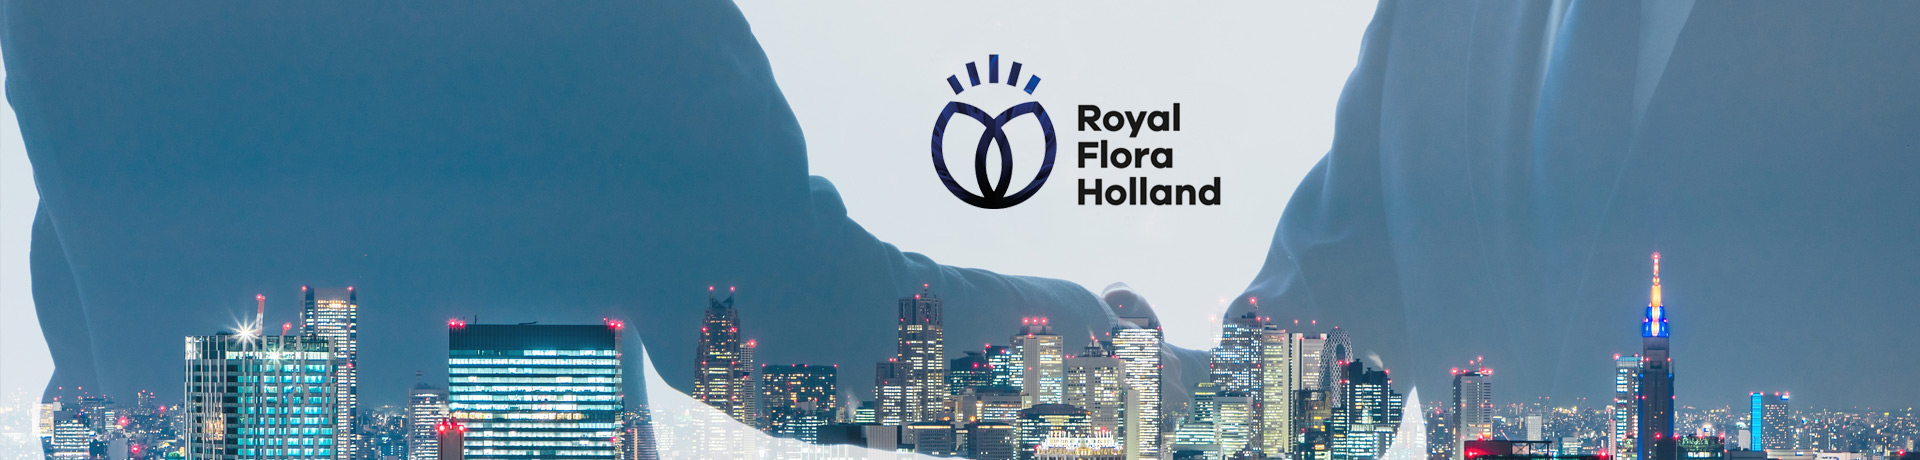 Manager Sales & Accountmanagement | Royal FloraHolland